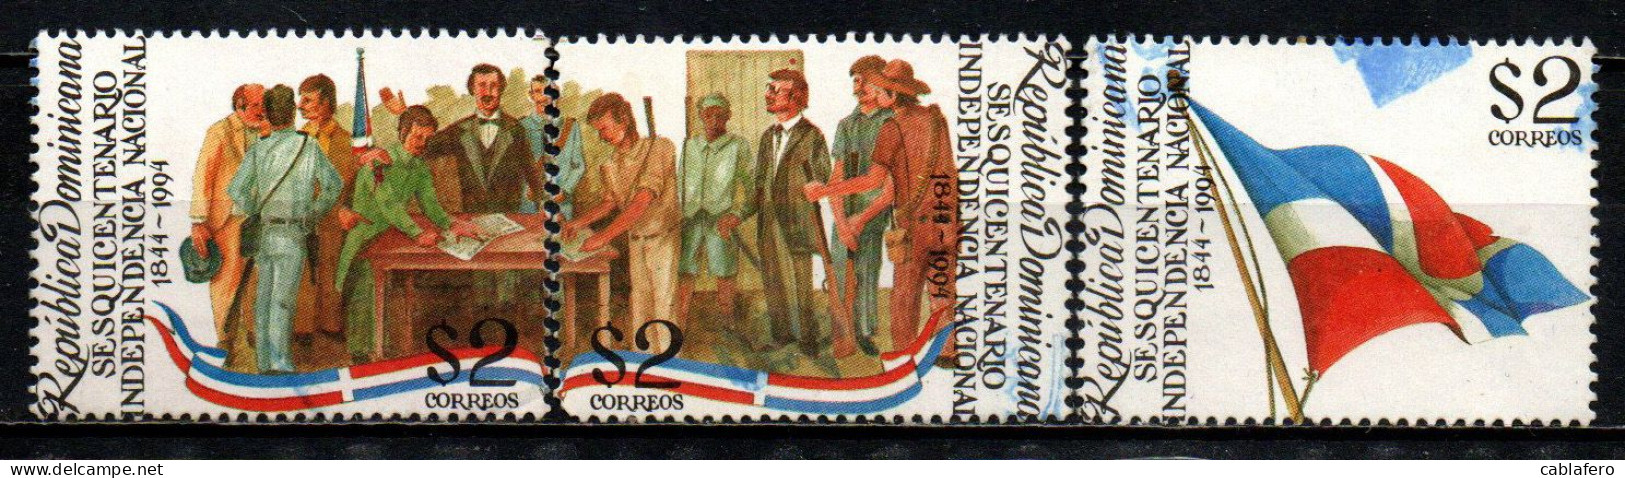 REPUBBLICA DOMENICANA - 1994 - 150° ANNIVERSARIO DELL'INDIPENDENZA - USATI - Dominican Republic